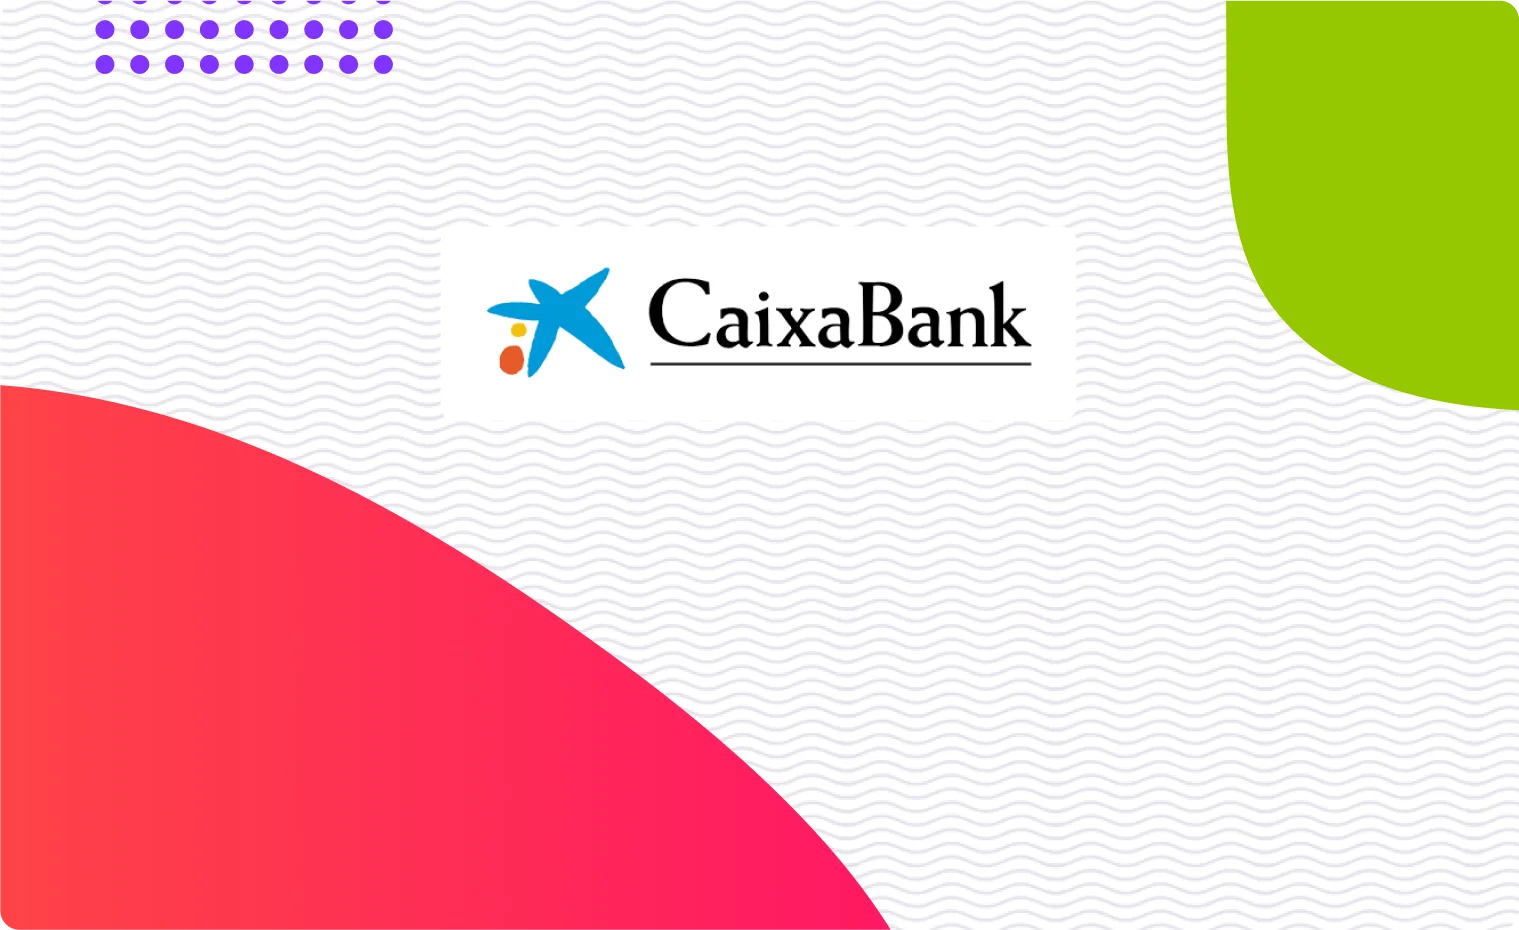 Composición de We are testers que representa Caixabank & We are testers